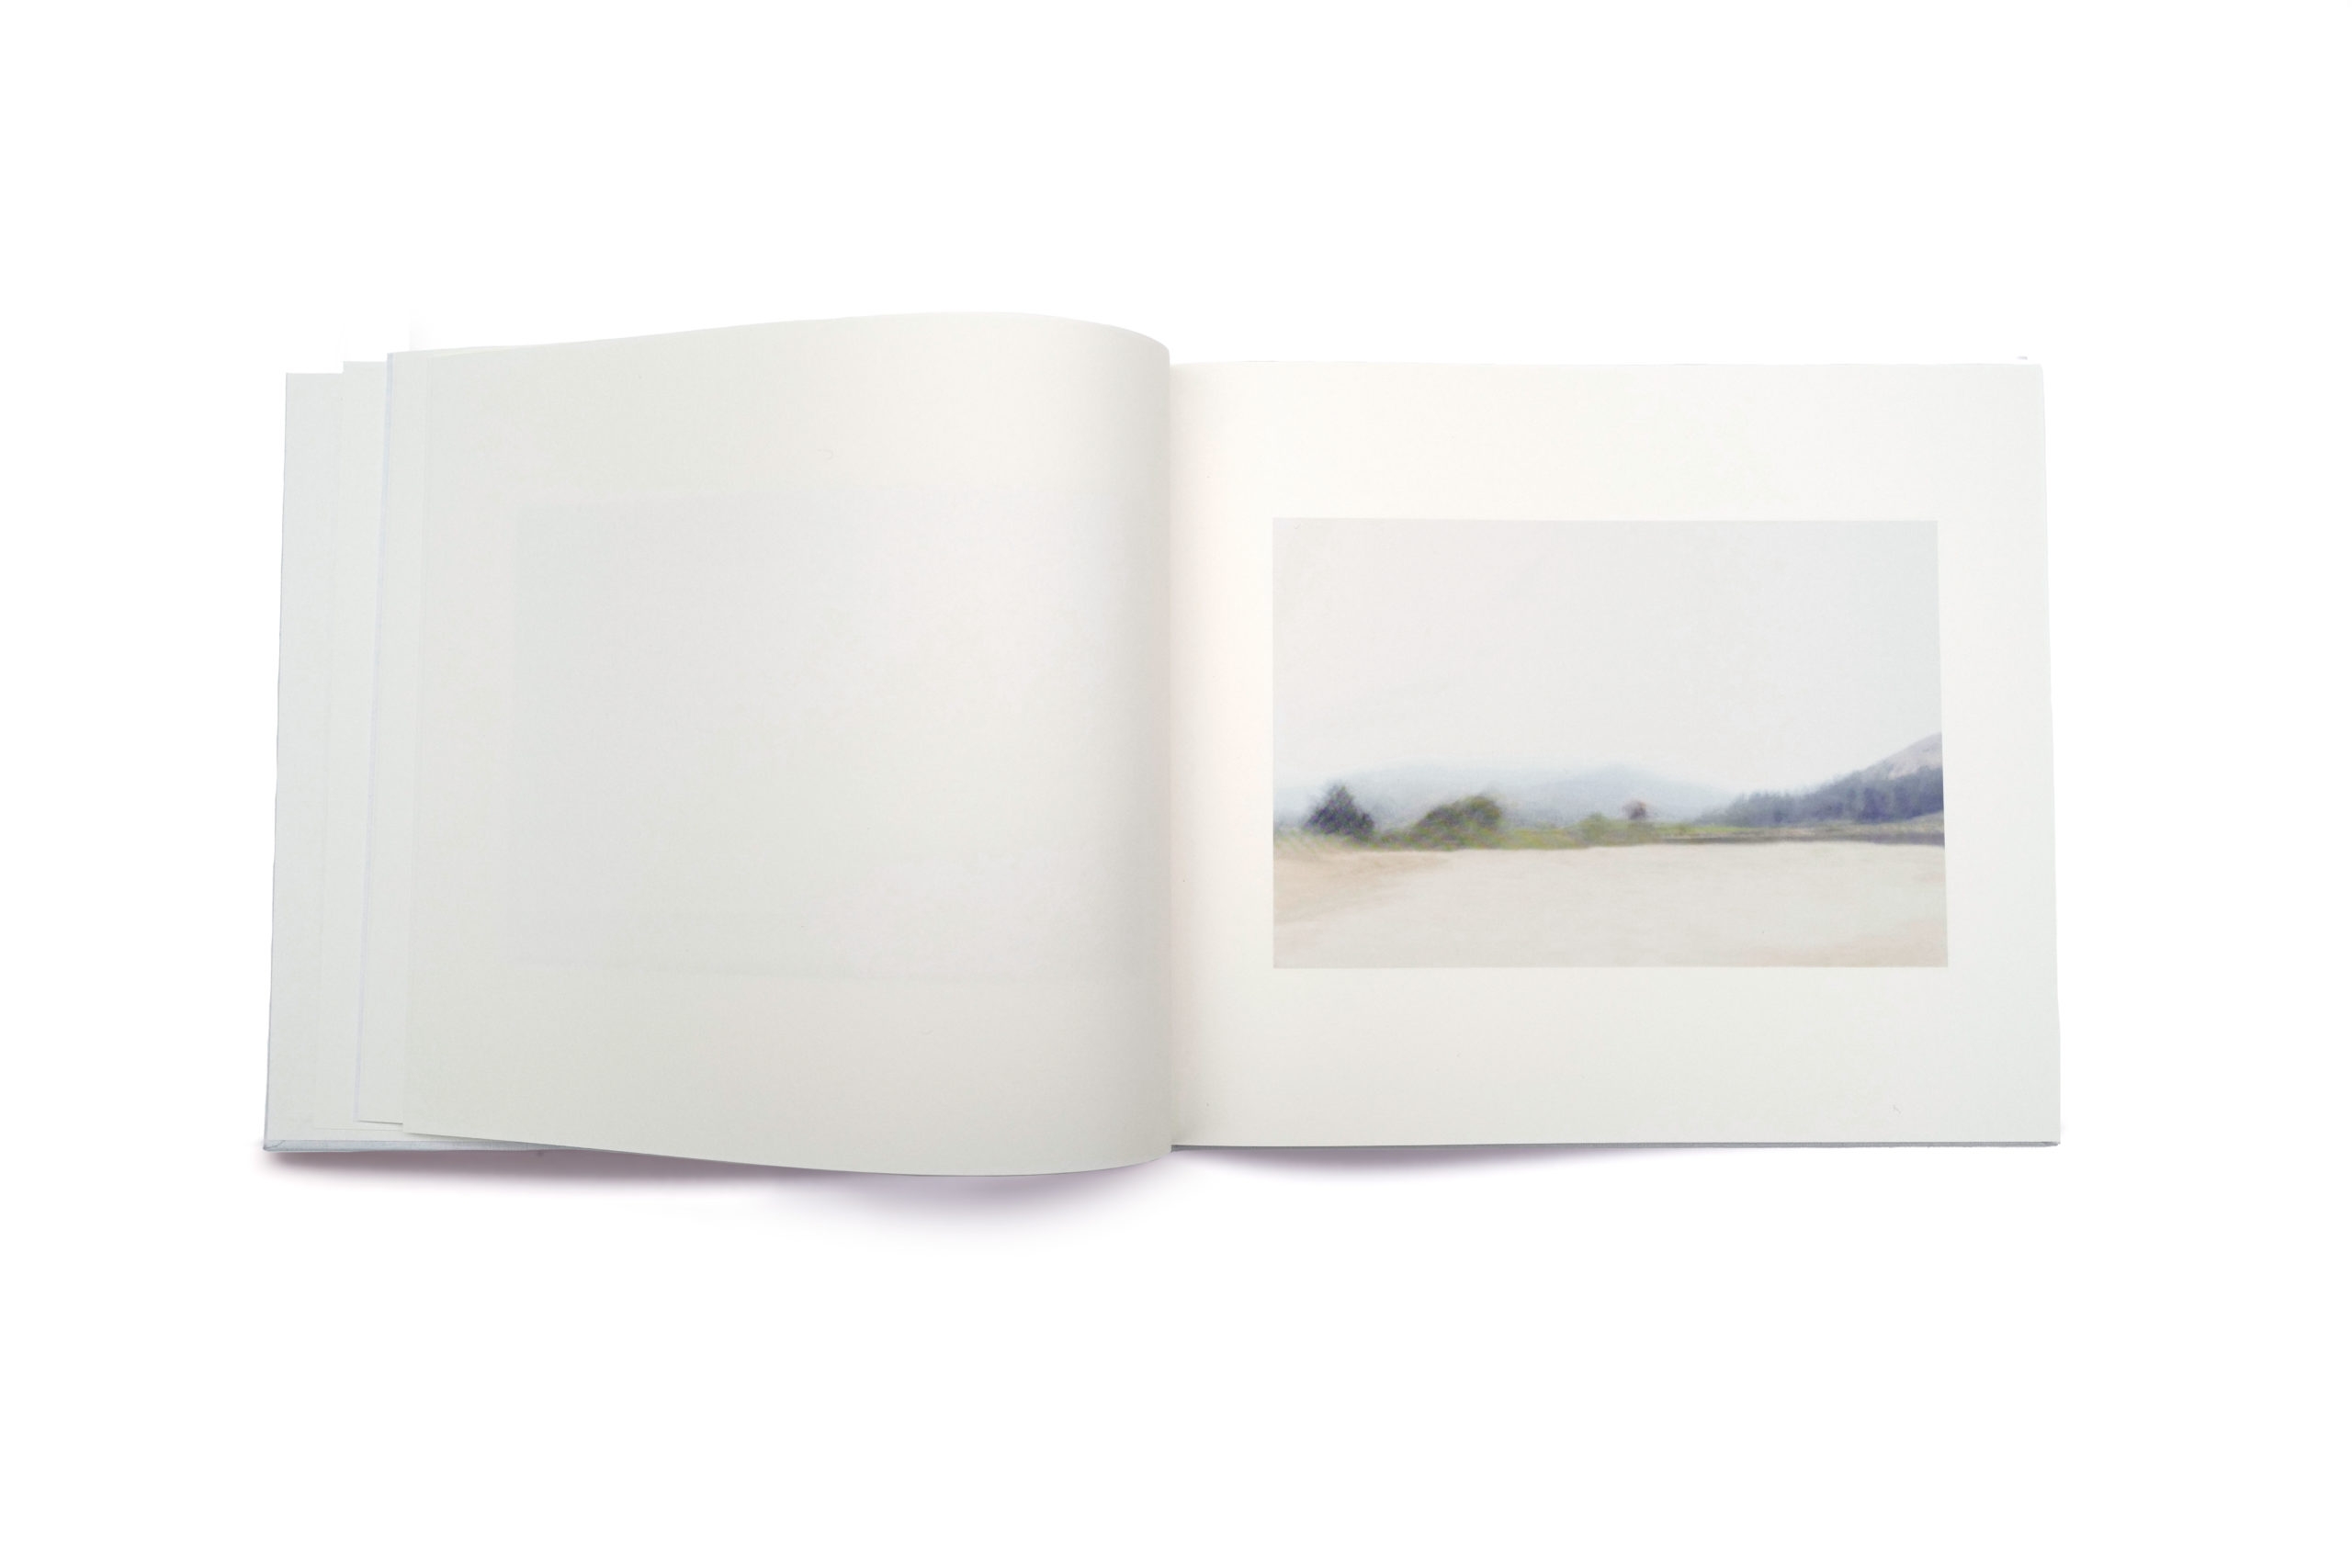 Consuelo Serrano lanza su primer libro de fotografía con misteriosos paisajes